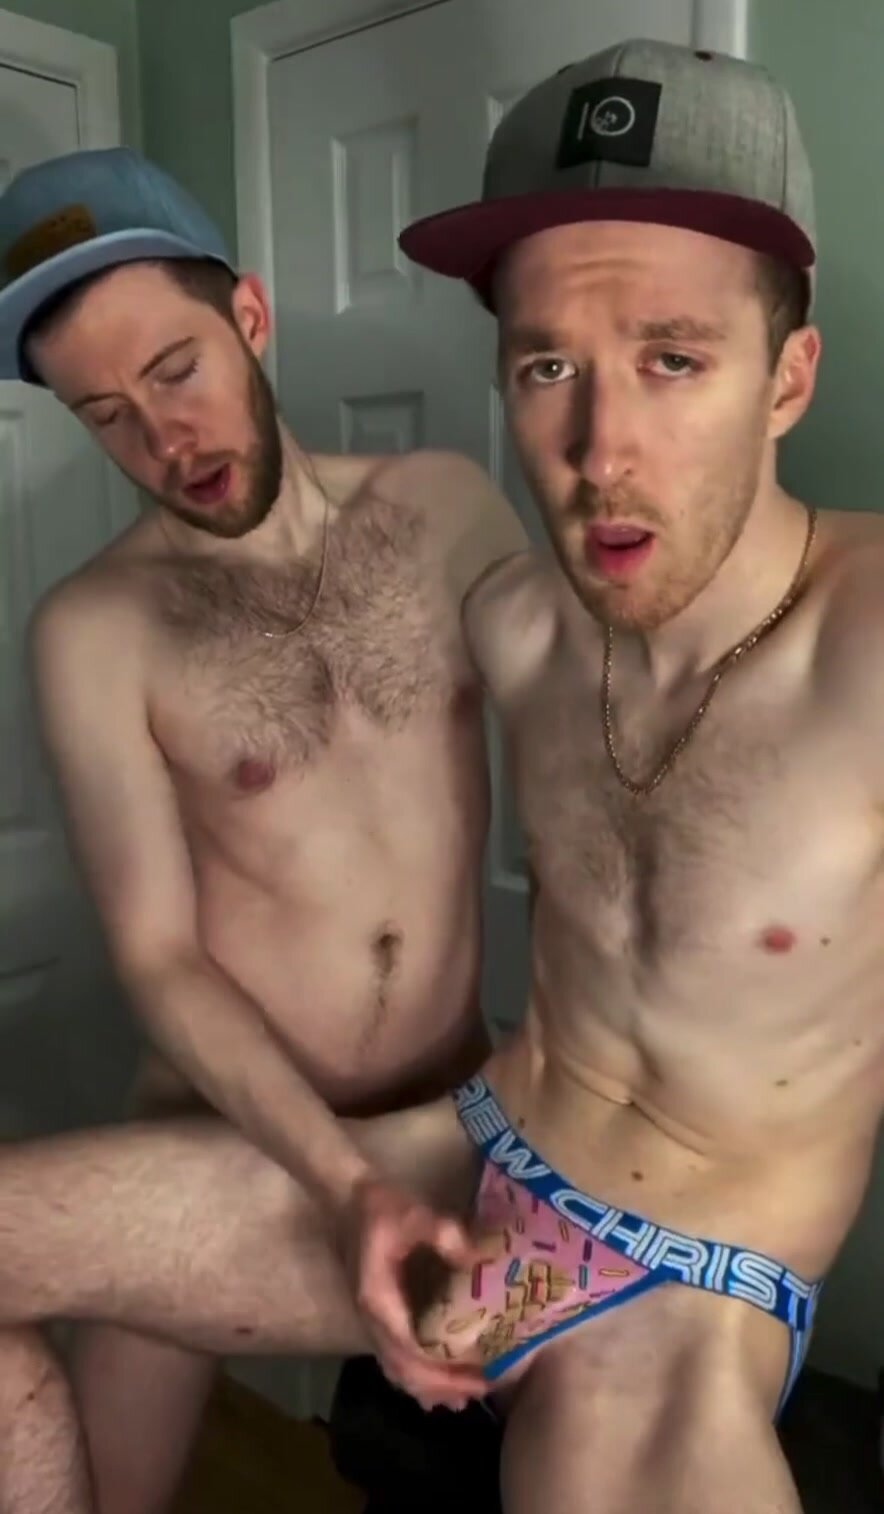 His boyfriend is helping him cum through his underwear